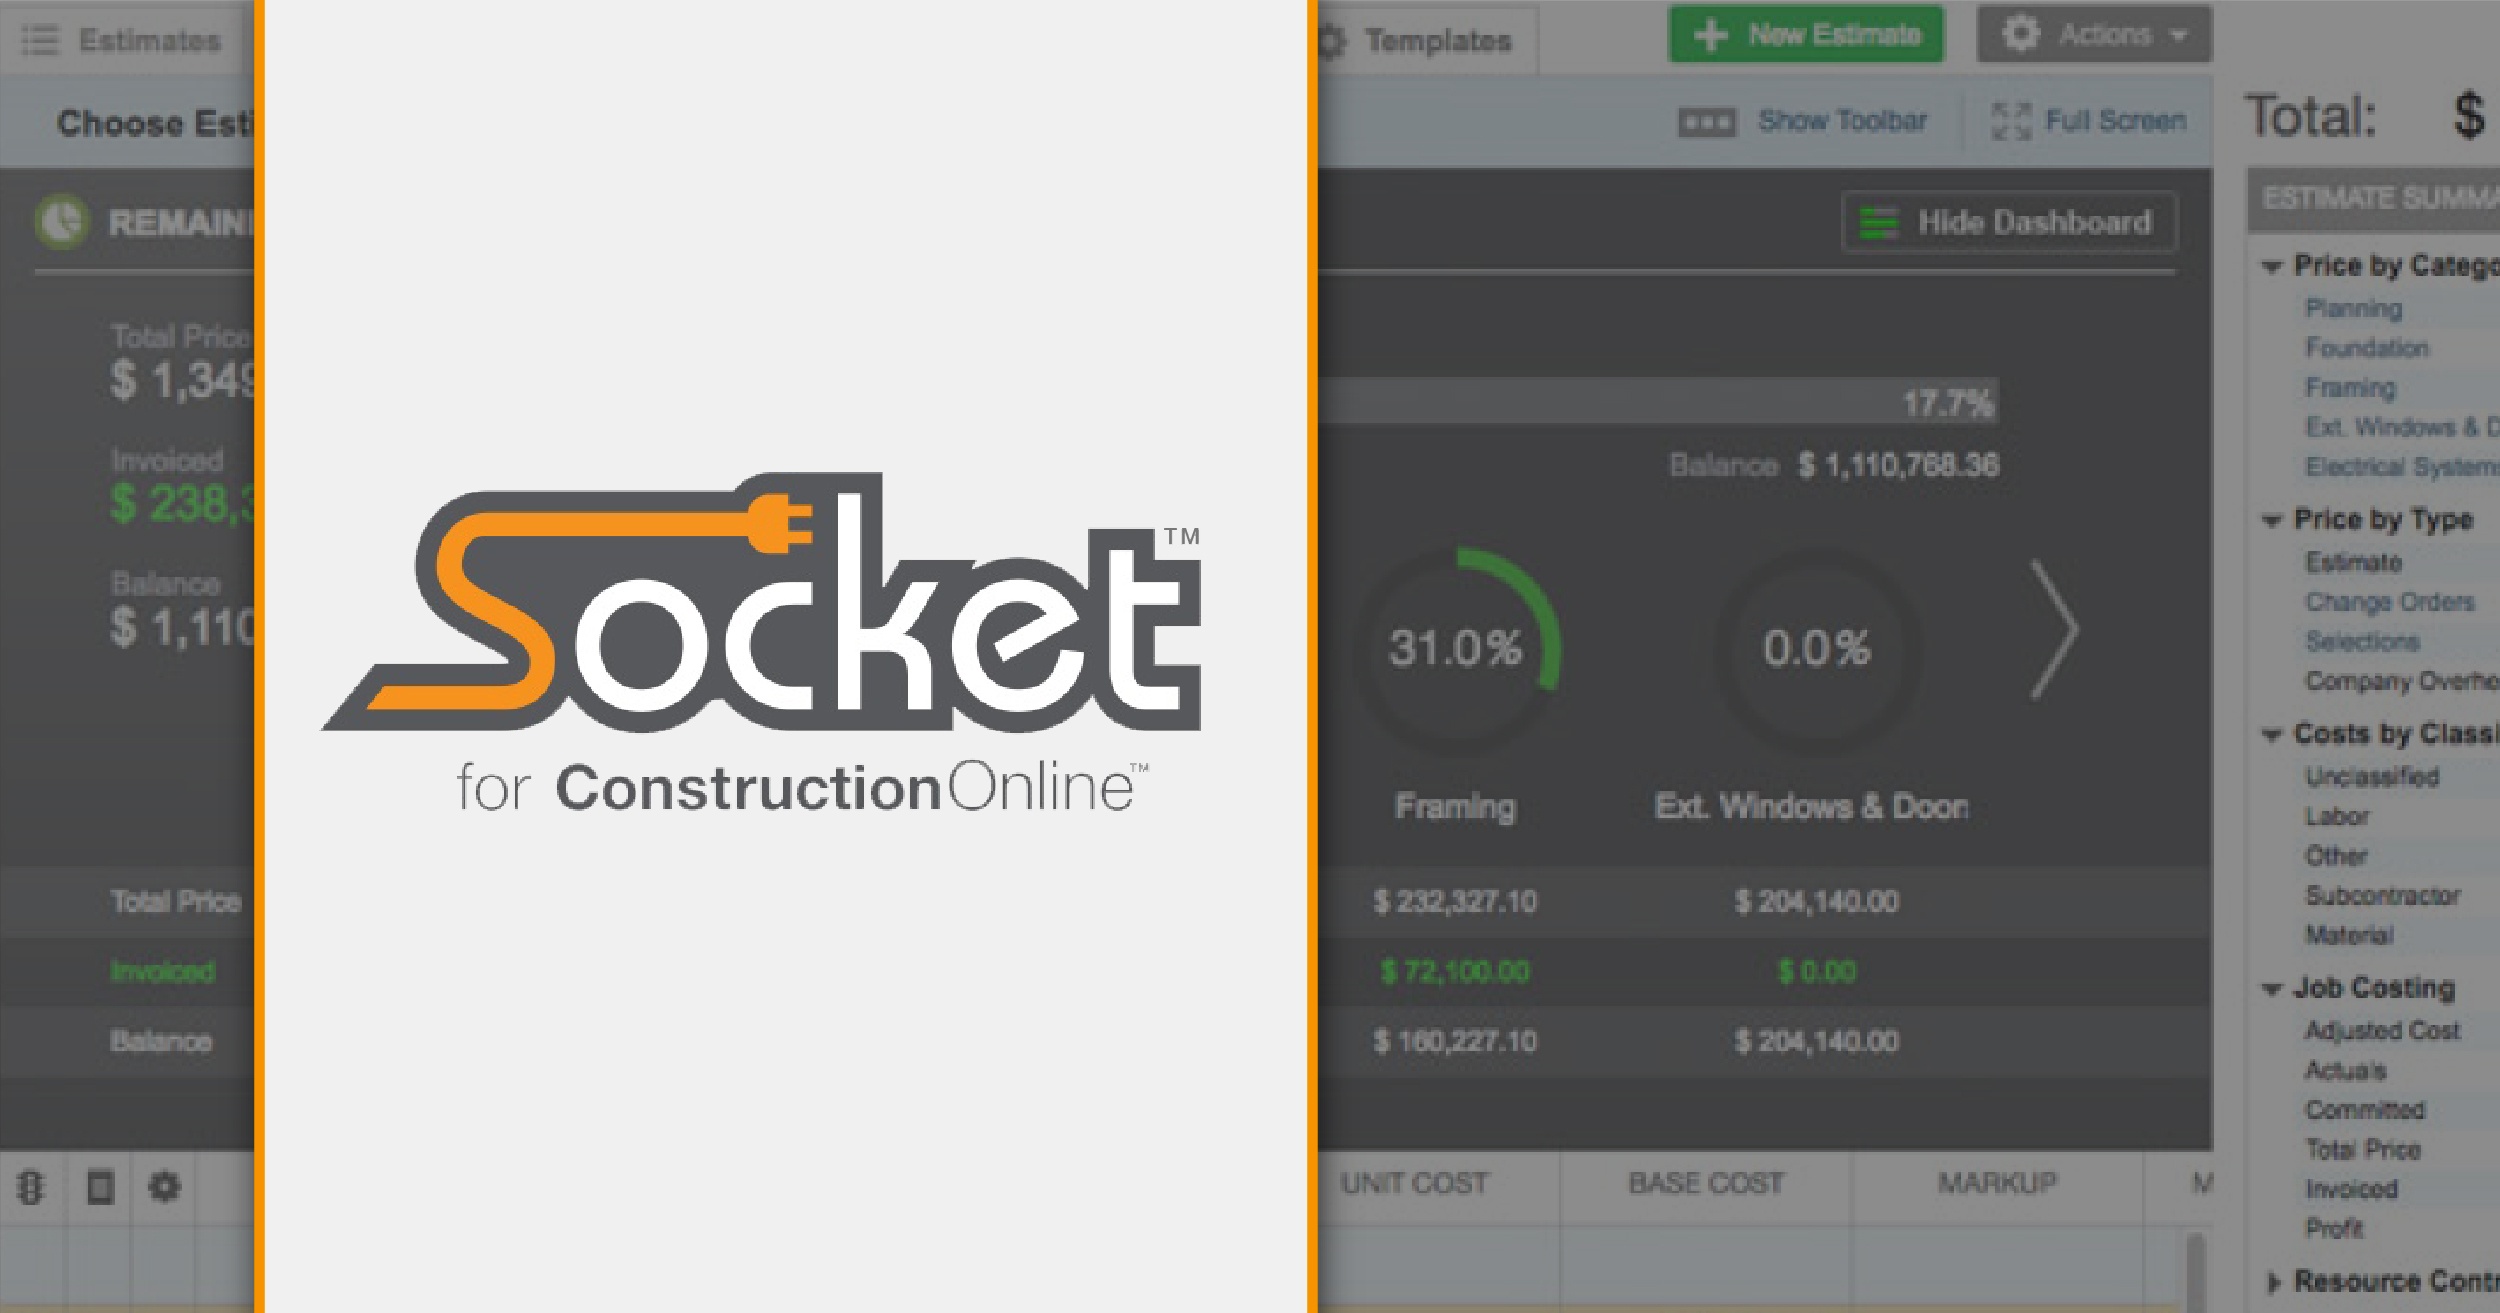 Meet Socket: ConstructionOnline's New Desktop Assistant